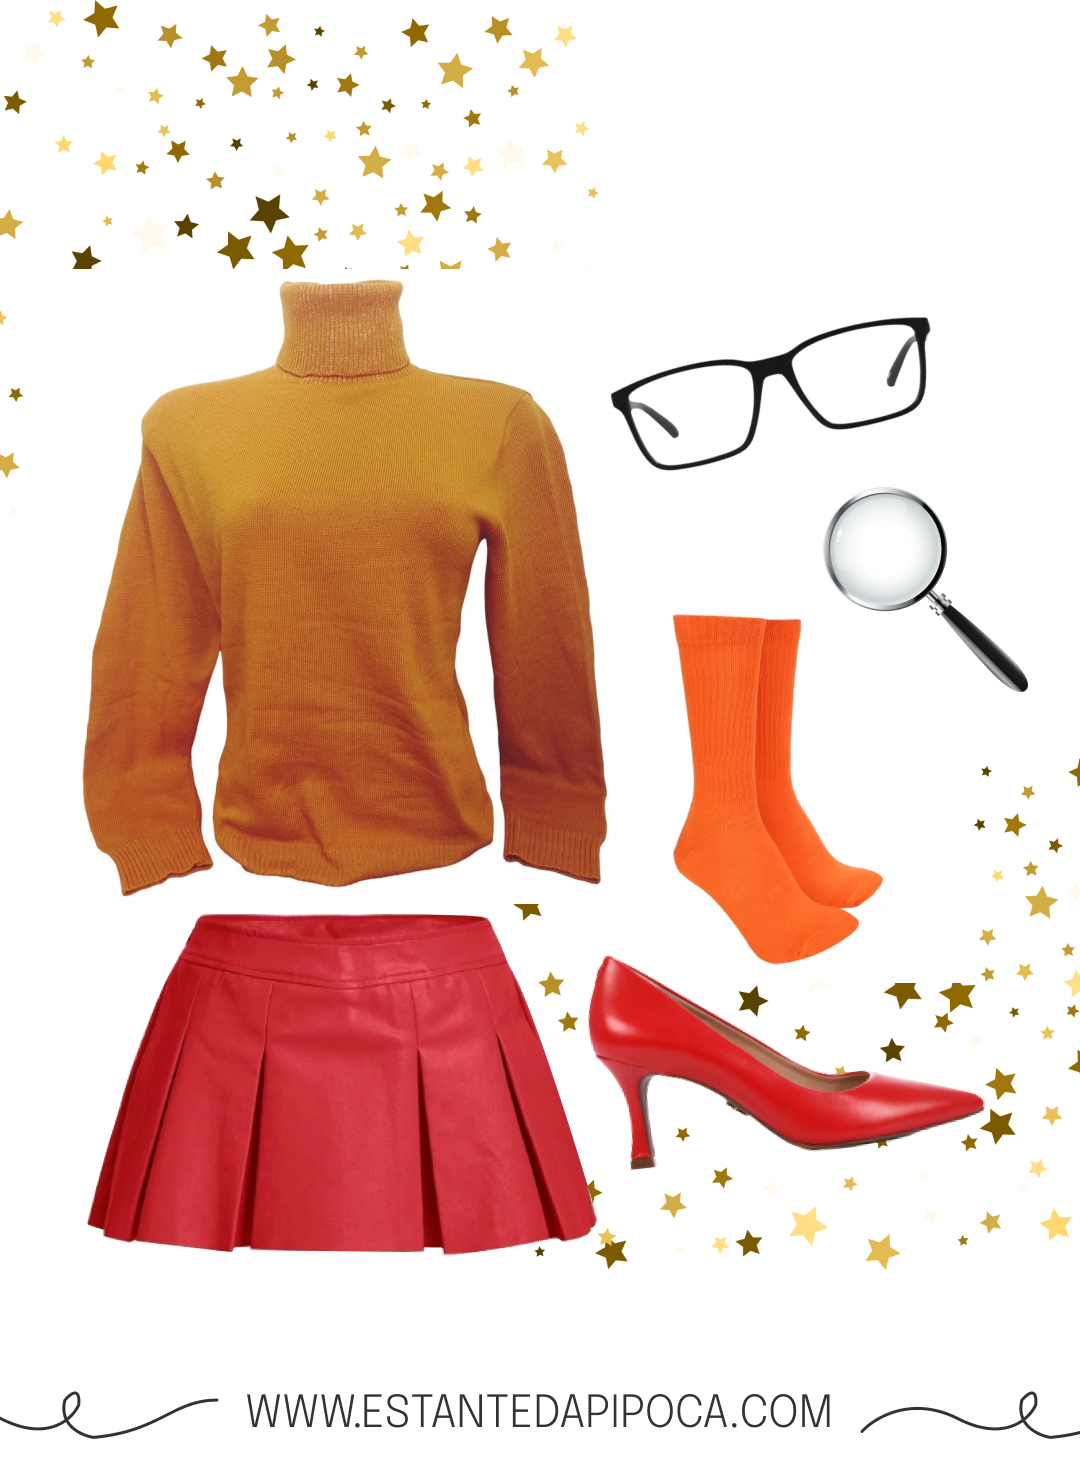 Elementos que compõem a fantasia de halloween feminina de Velma: cacharrel laranja, óculos quadrado, lupa, meia laranja, saia vermelha e sapato vermelho.